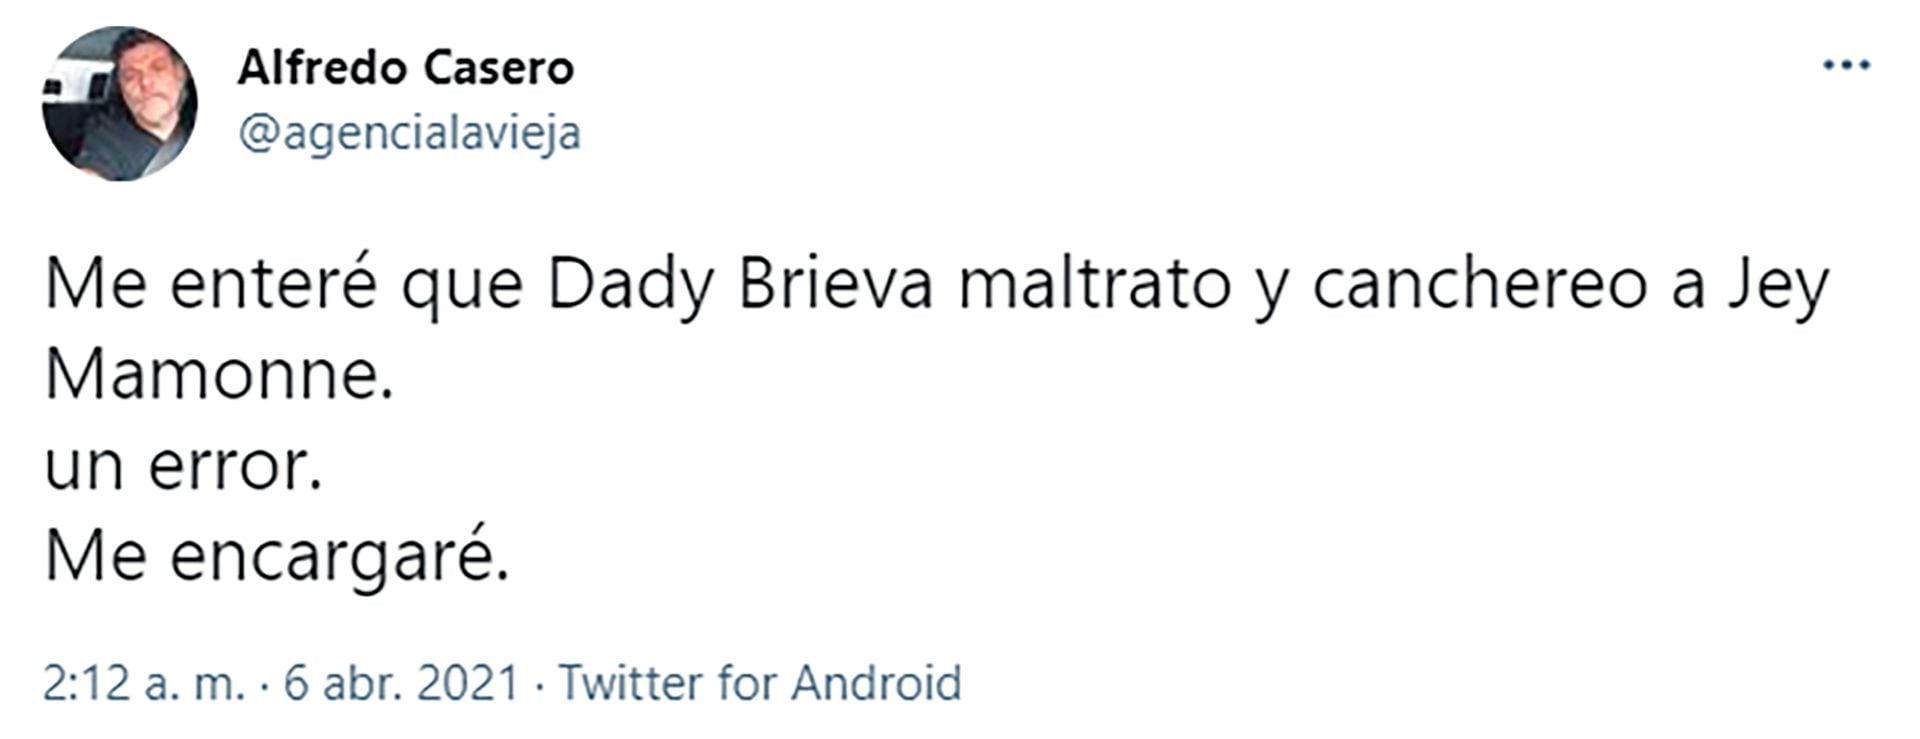 El tuit de Casero contra Dady Brieva 